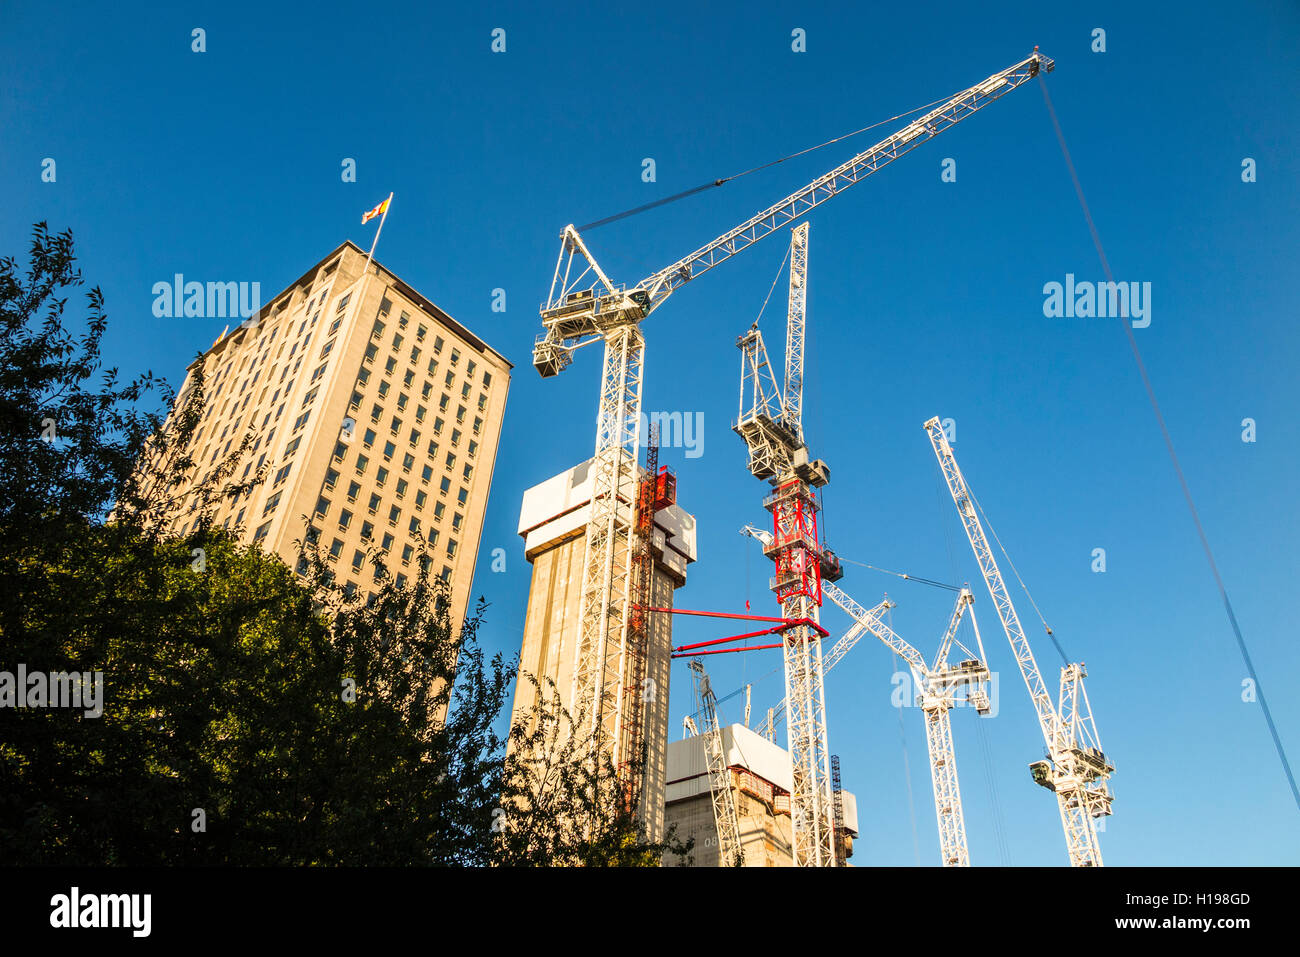 Wohnimmobilien Branche: turmdrehkrane an der Southbank stellen hohe Bebauung, London SE1, bei sonnigem Wetter mit blauem Himmel Stockfoto